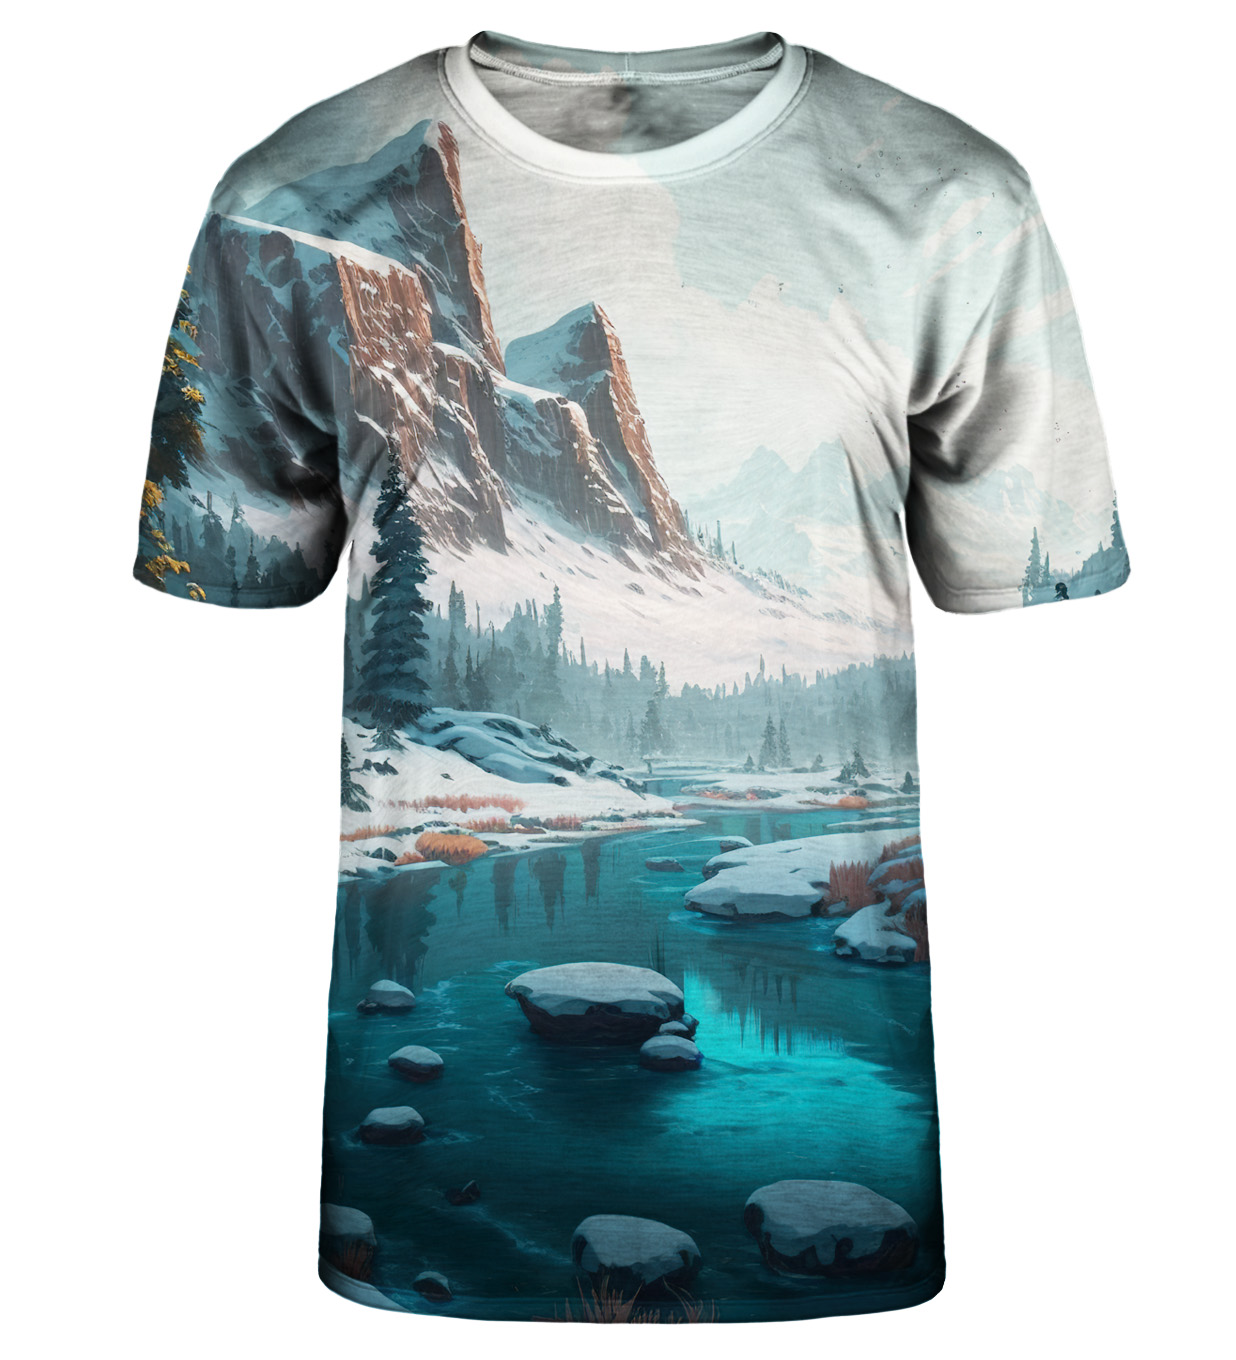 Winter River T-shirt - XL